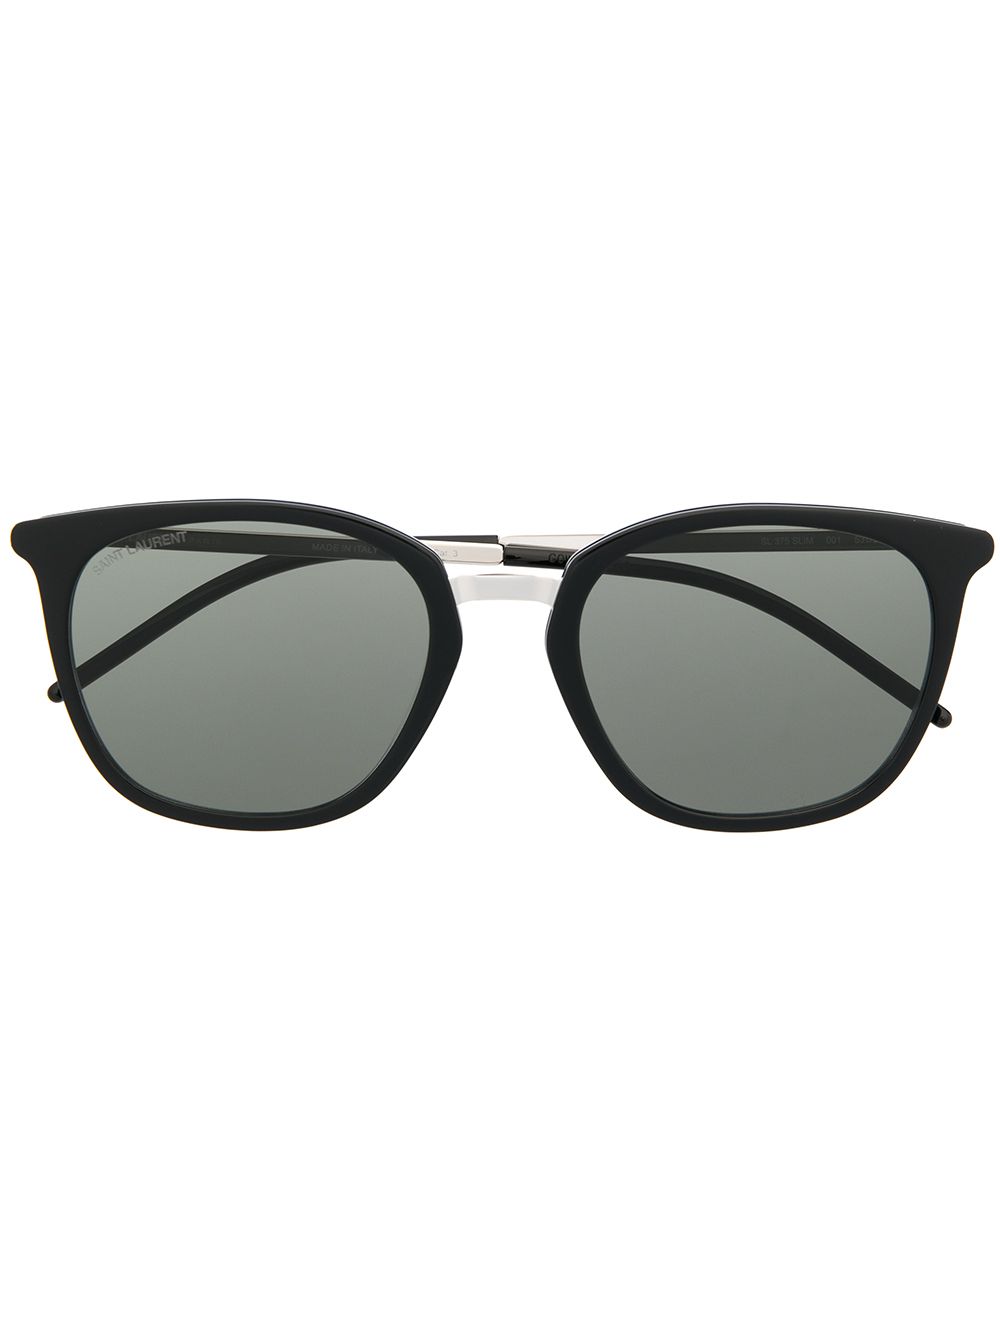 Saint Laurent Eyewear SL375 Slim sunglasses - Silver von Saint Laurent Eyewear